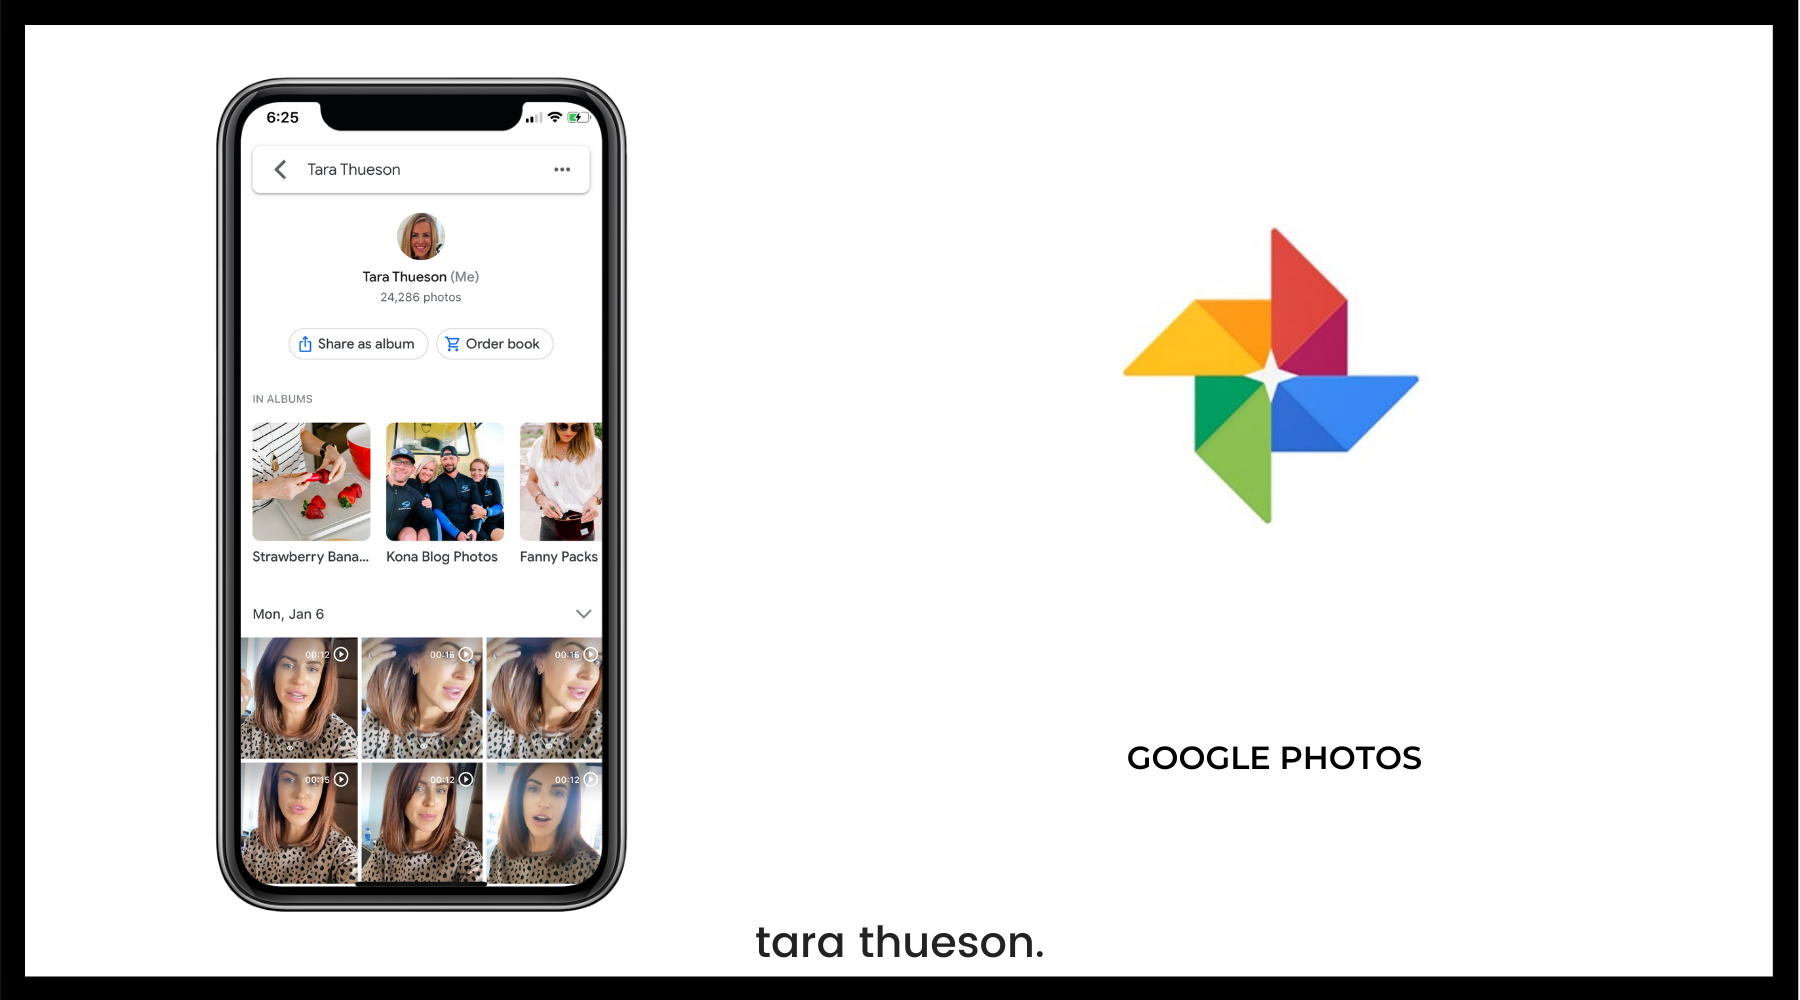 google photos pricing